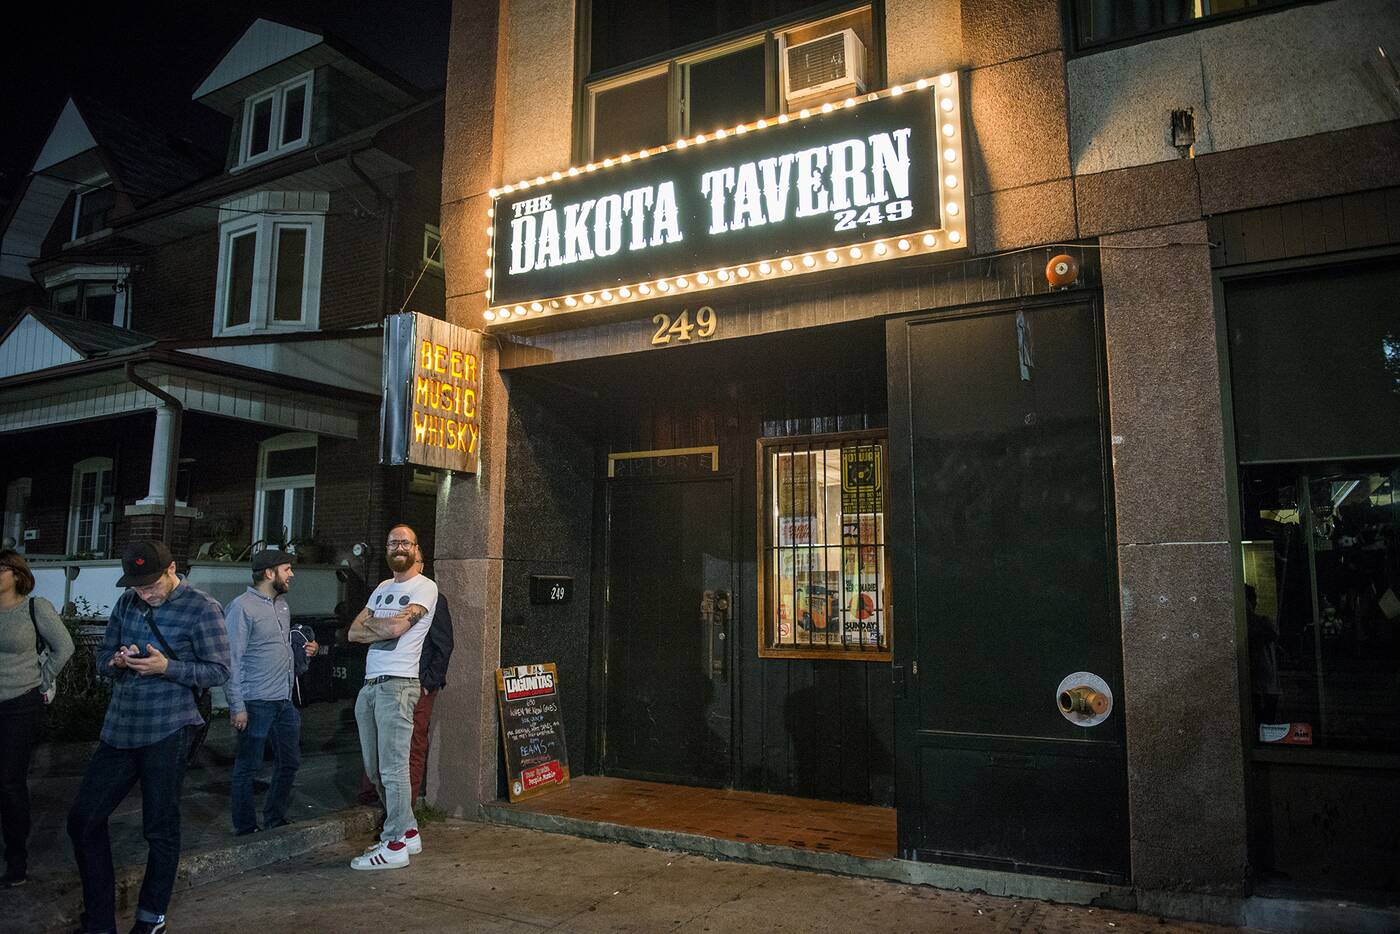 Dakota Tavern Toronto